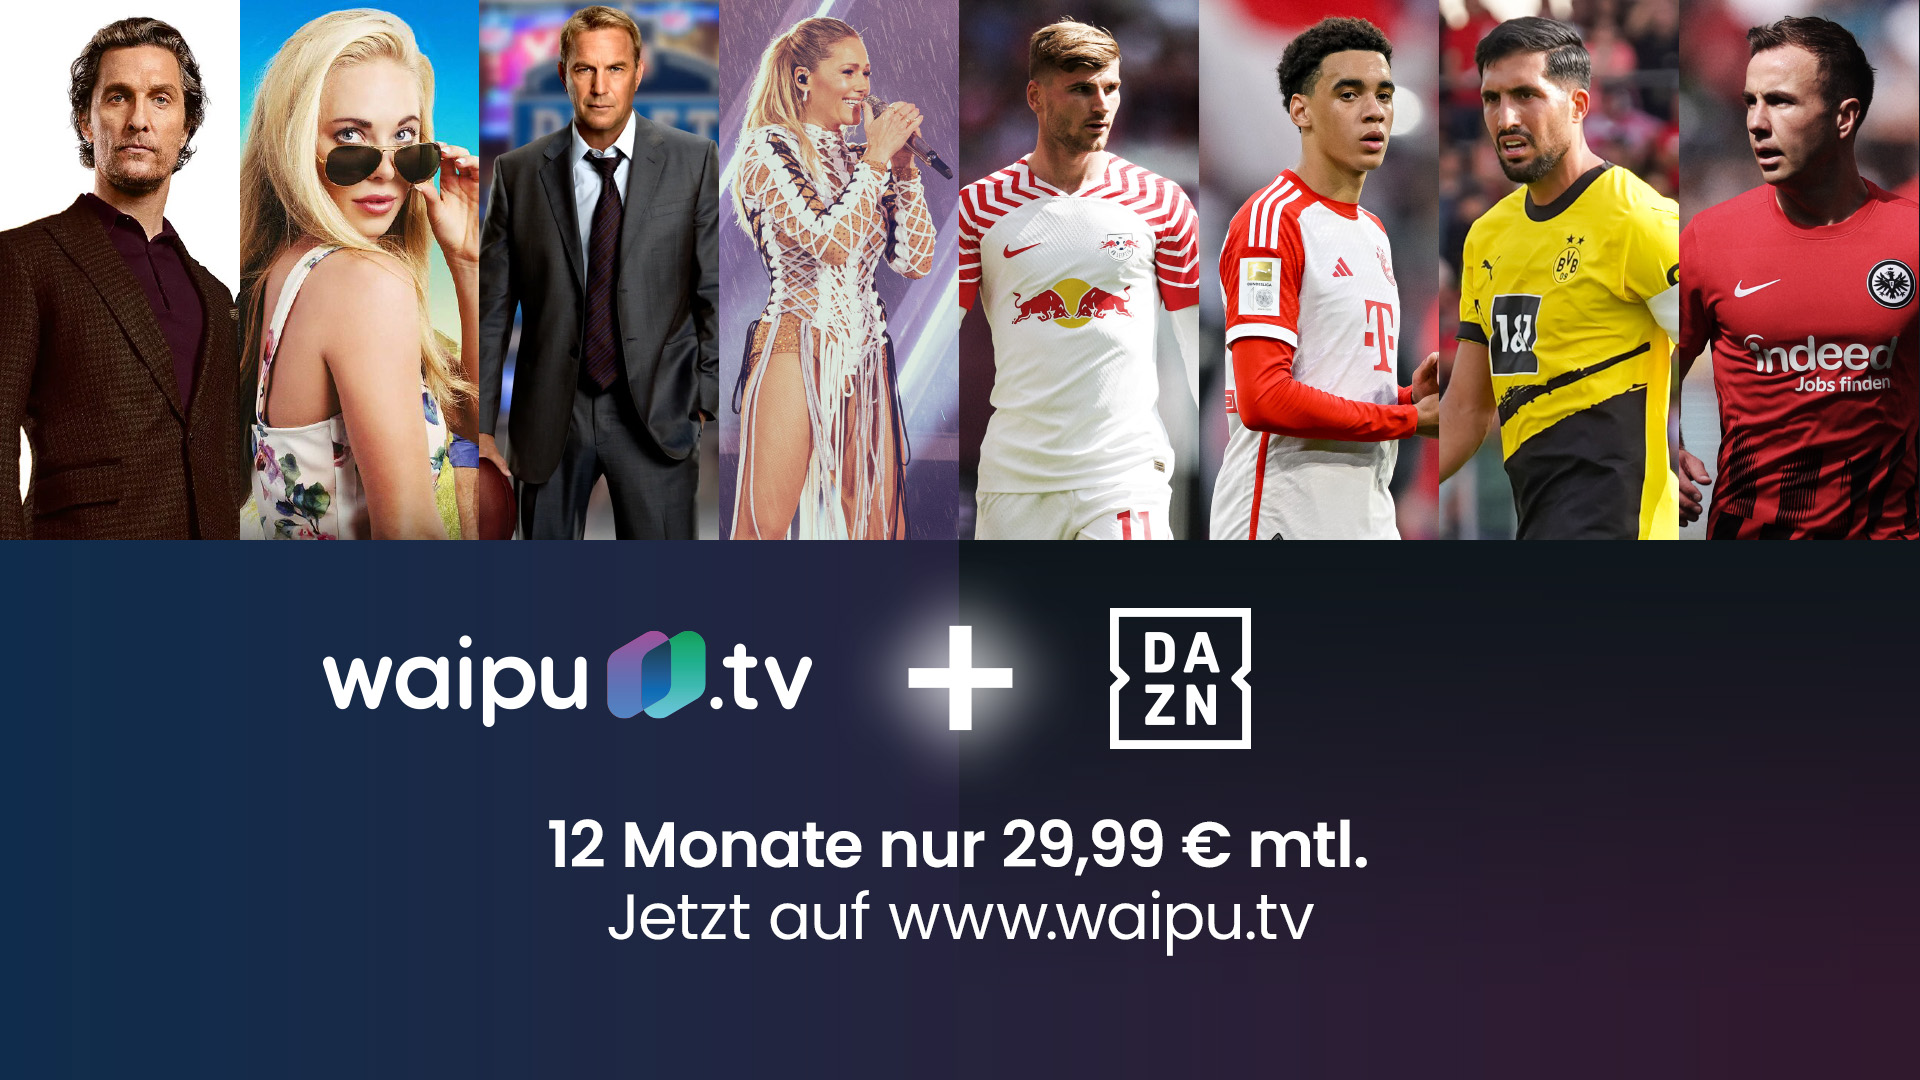 waipu.tv Rabatt 25 Prozent launcht DAZN UNLIMITED-Angebot neues mit